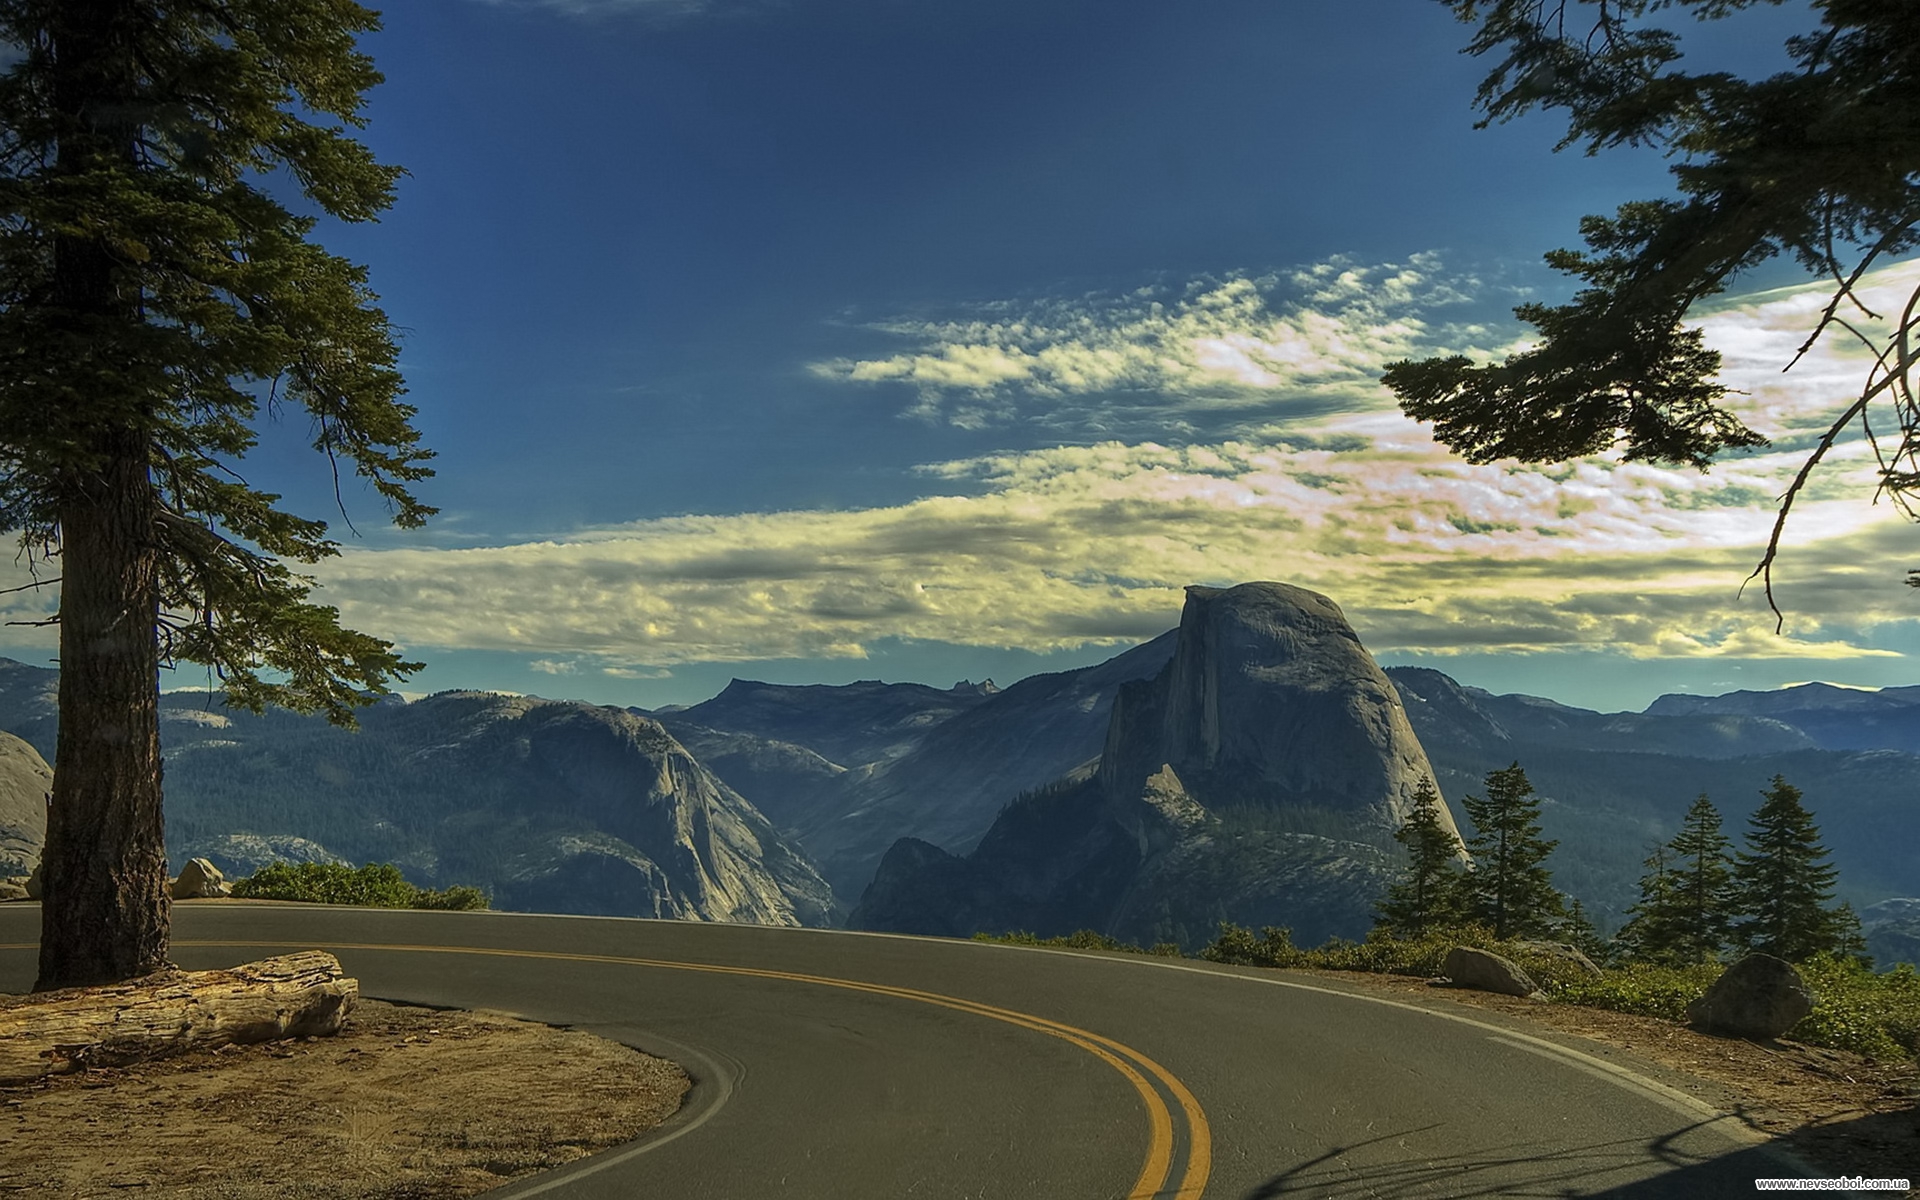 Крутой поворот судьбы 16. Национальный парк Йосемити, США дорога. Национальный парк Йосемити Калифорния США. Национальный парк Йосемити Калифорния звёзды. Пейзаж с дорогой.